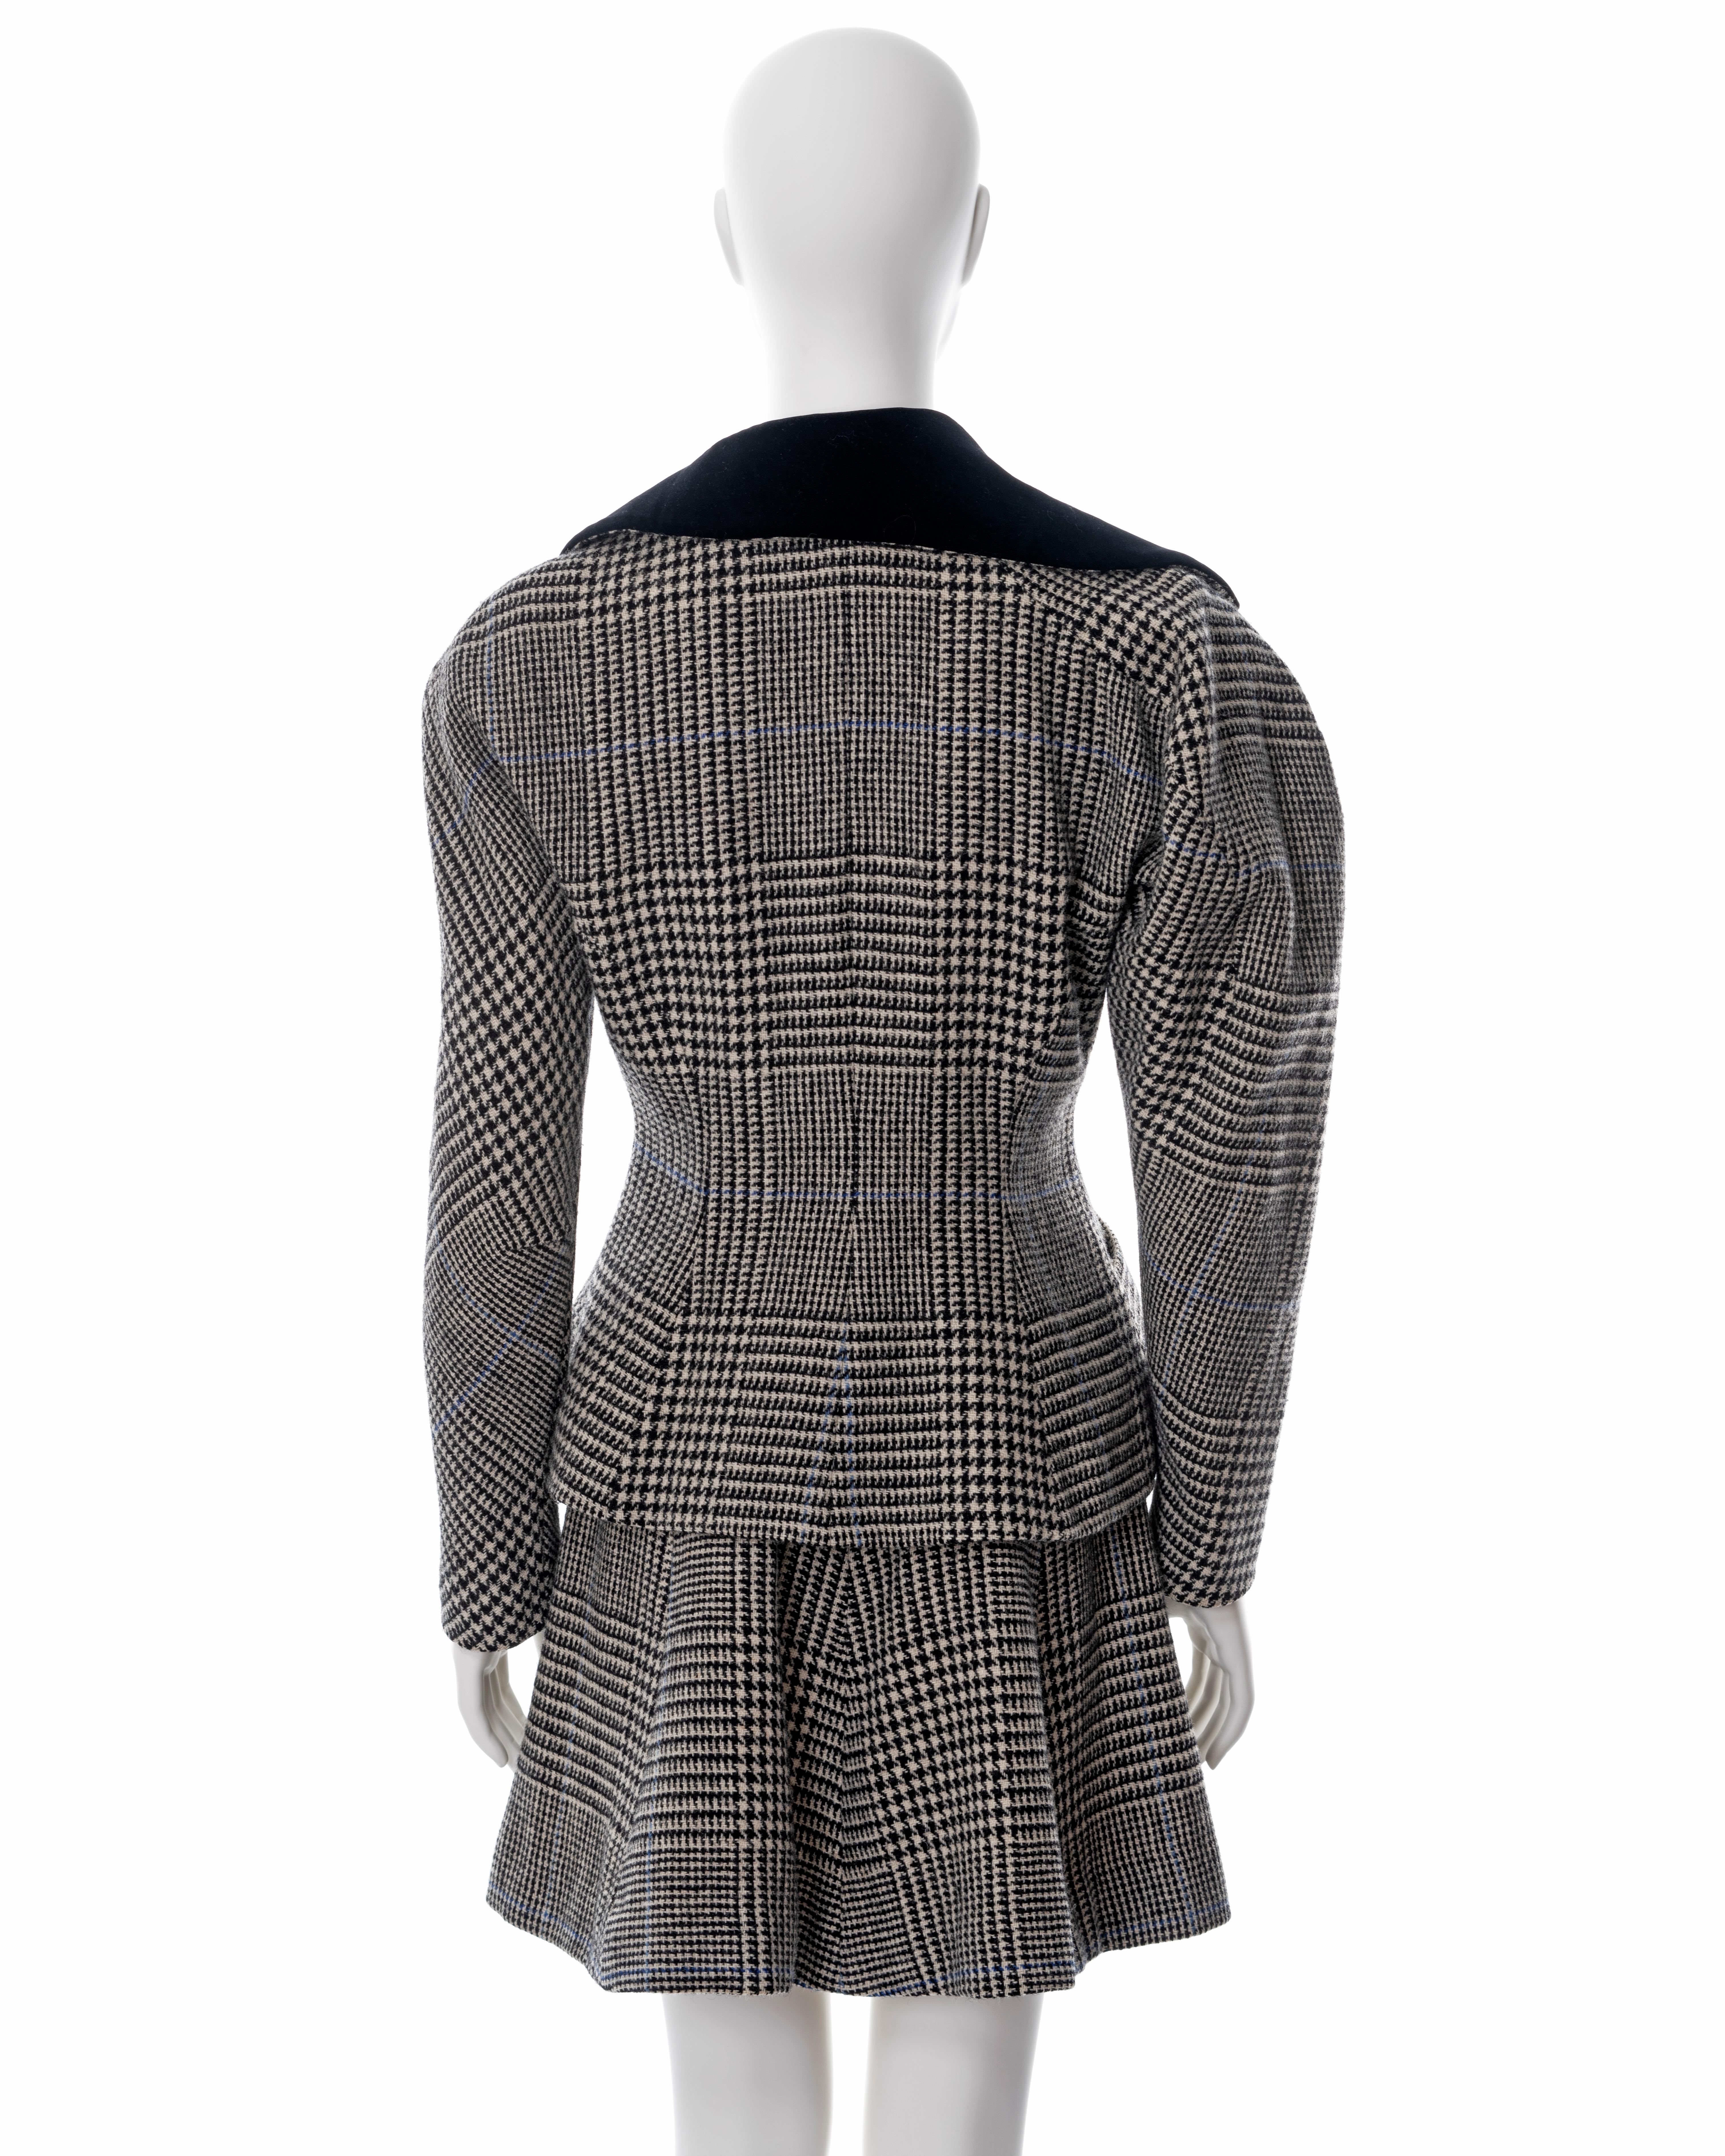 Vivienne Westwood grey houndstooth check tweed skirt suit, fw 1996 4